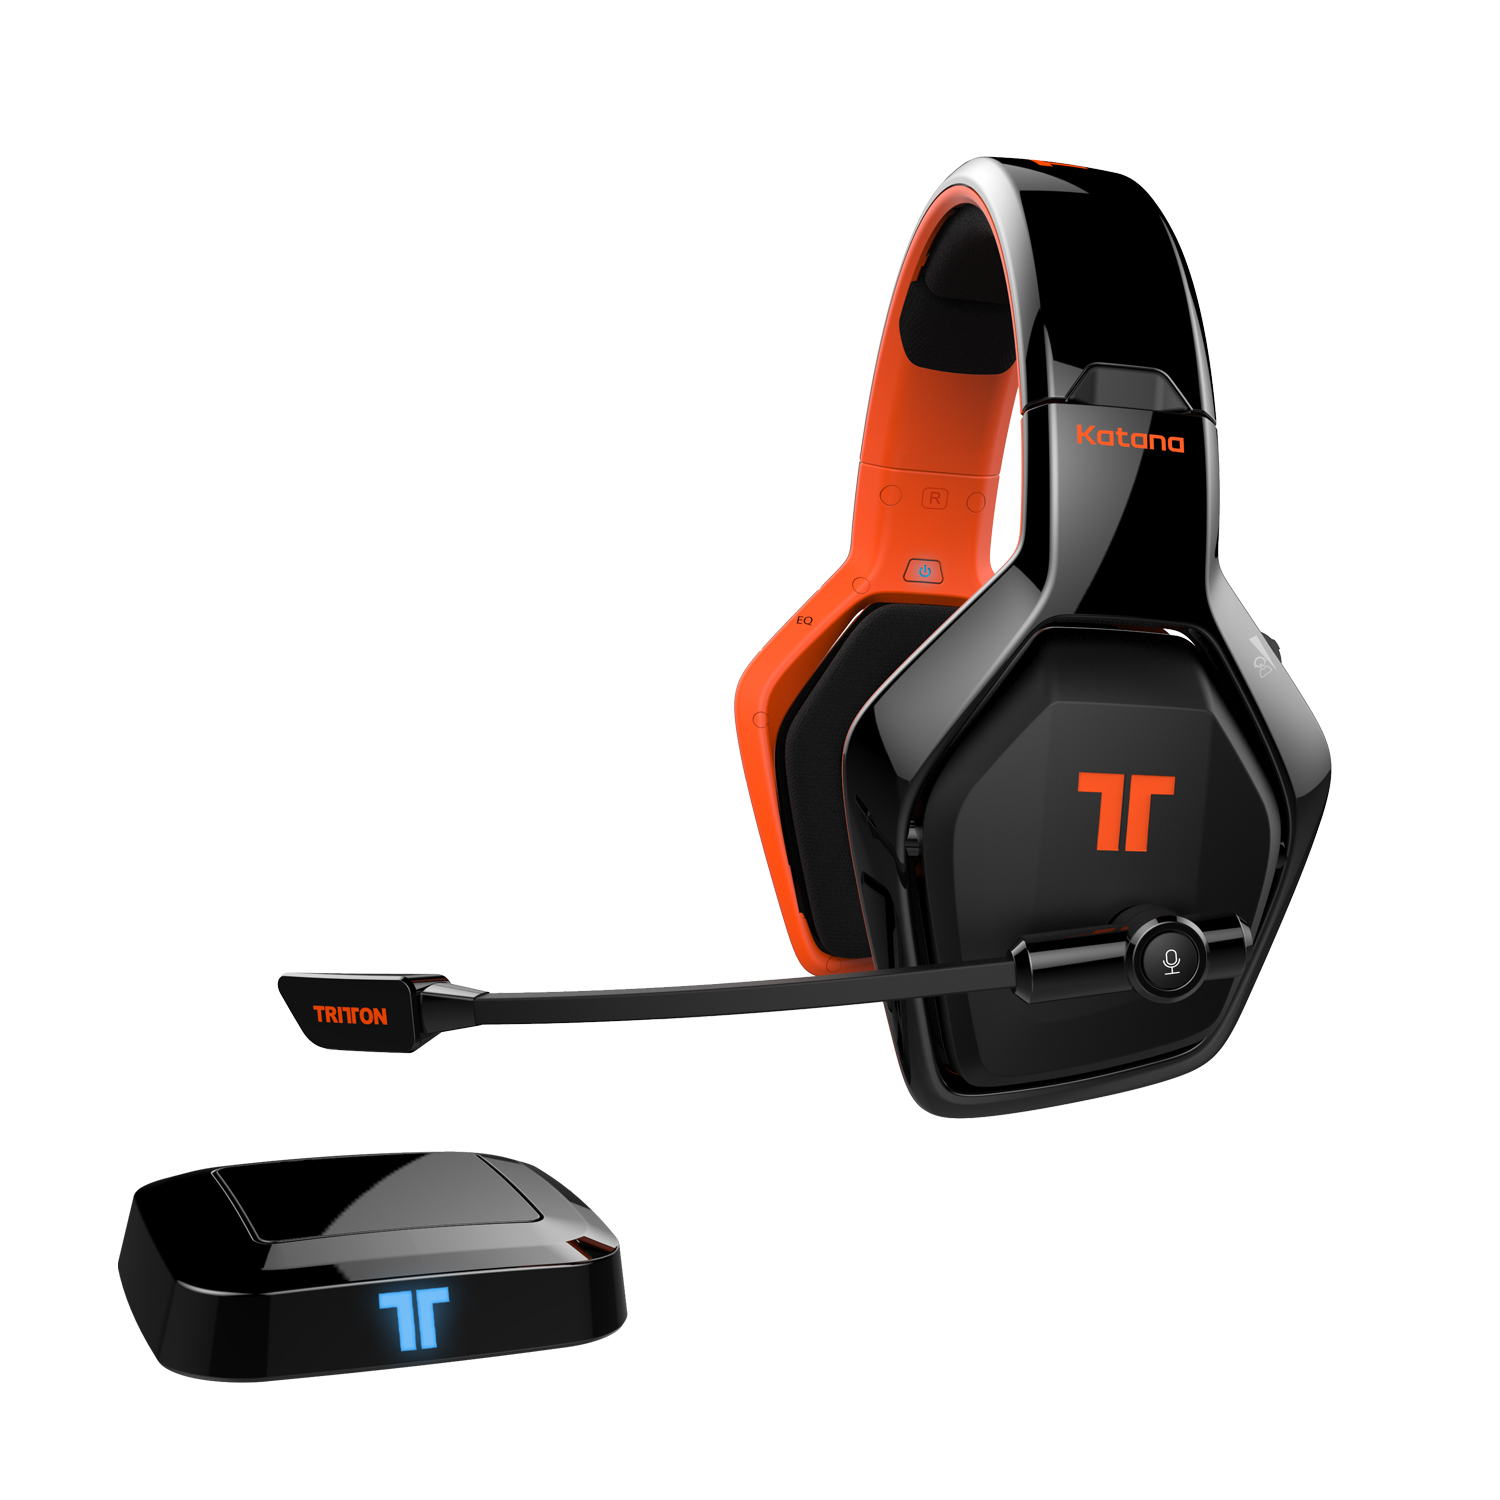 Tritton Katana 7.1 Wireless Gaming Headset (zwart) (PC/PS4/XboxOne) (PC), Tritton